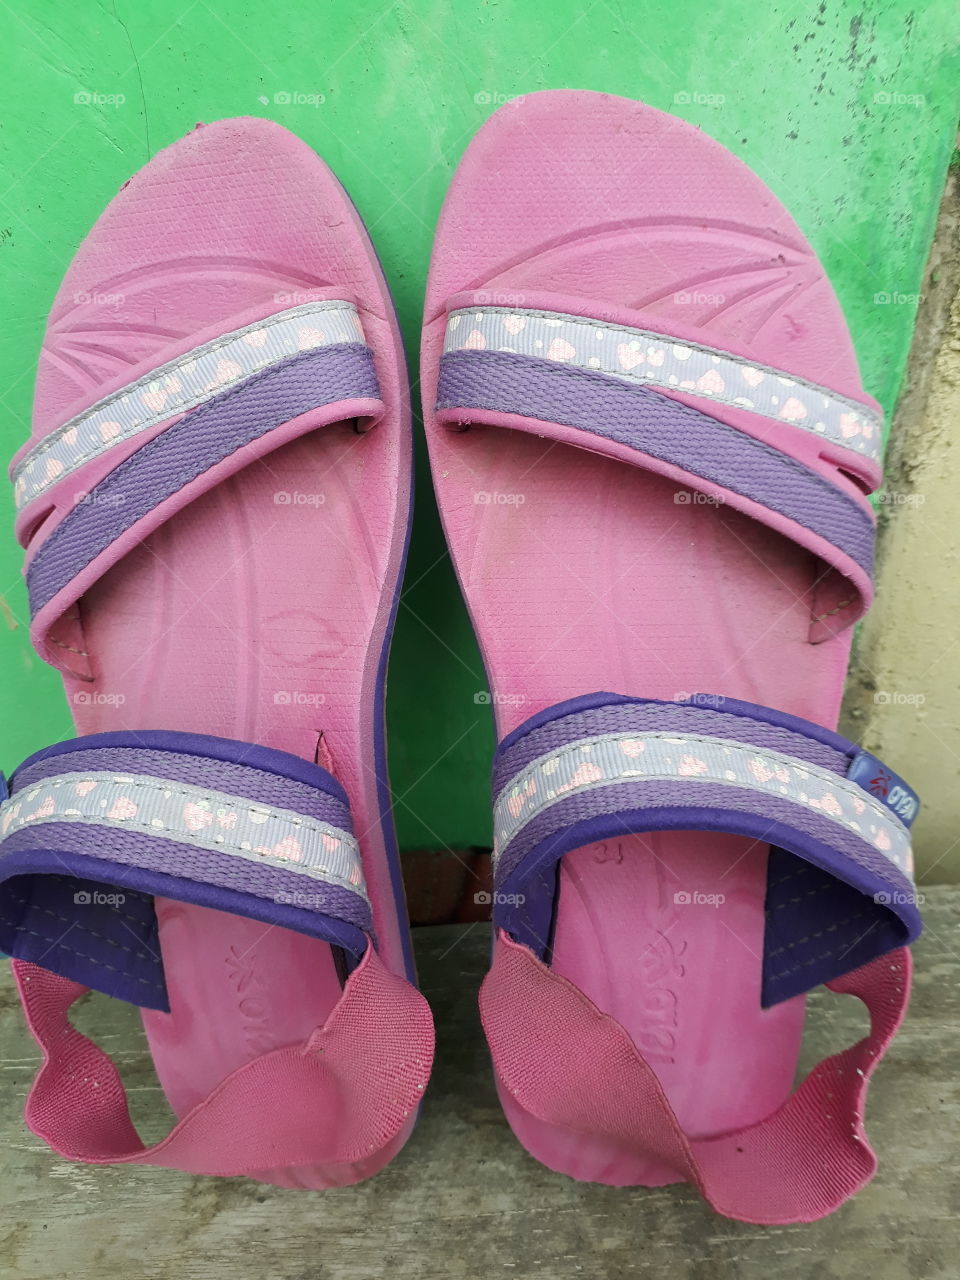 Battered sandals